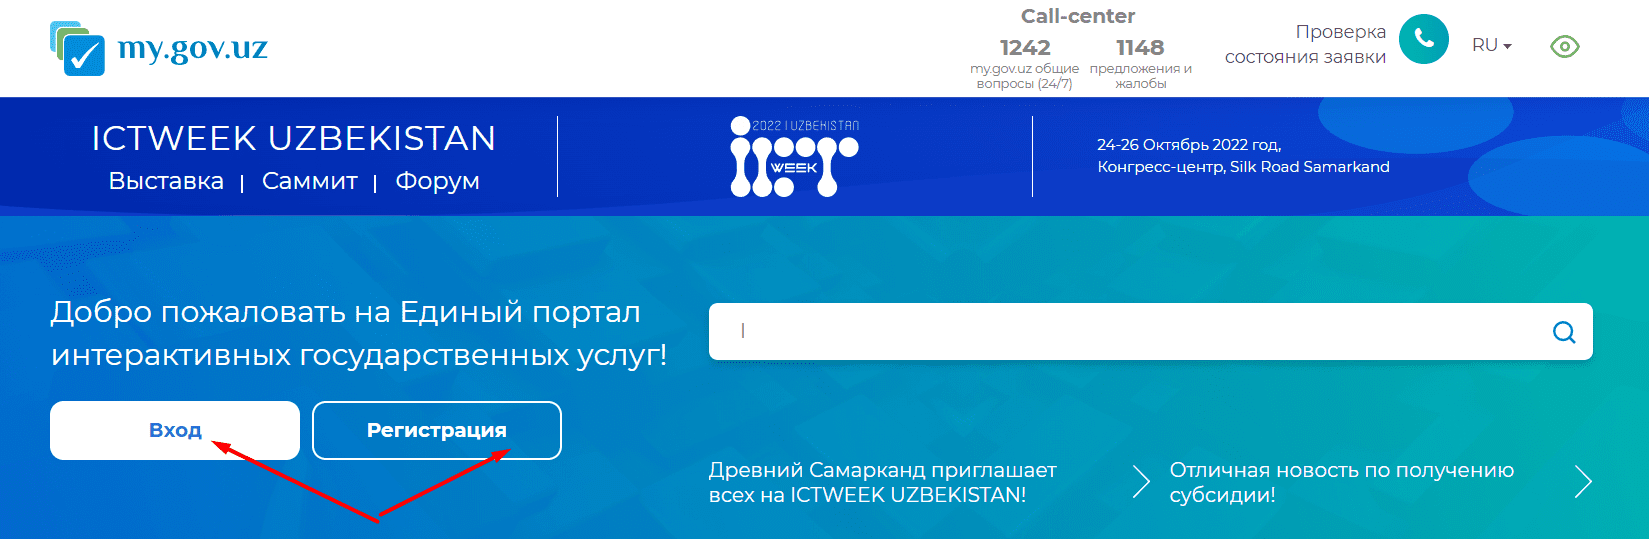 Единый портал интерактивных государственных услуг (my.gov.uz)